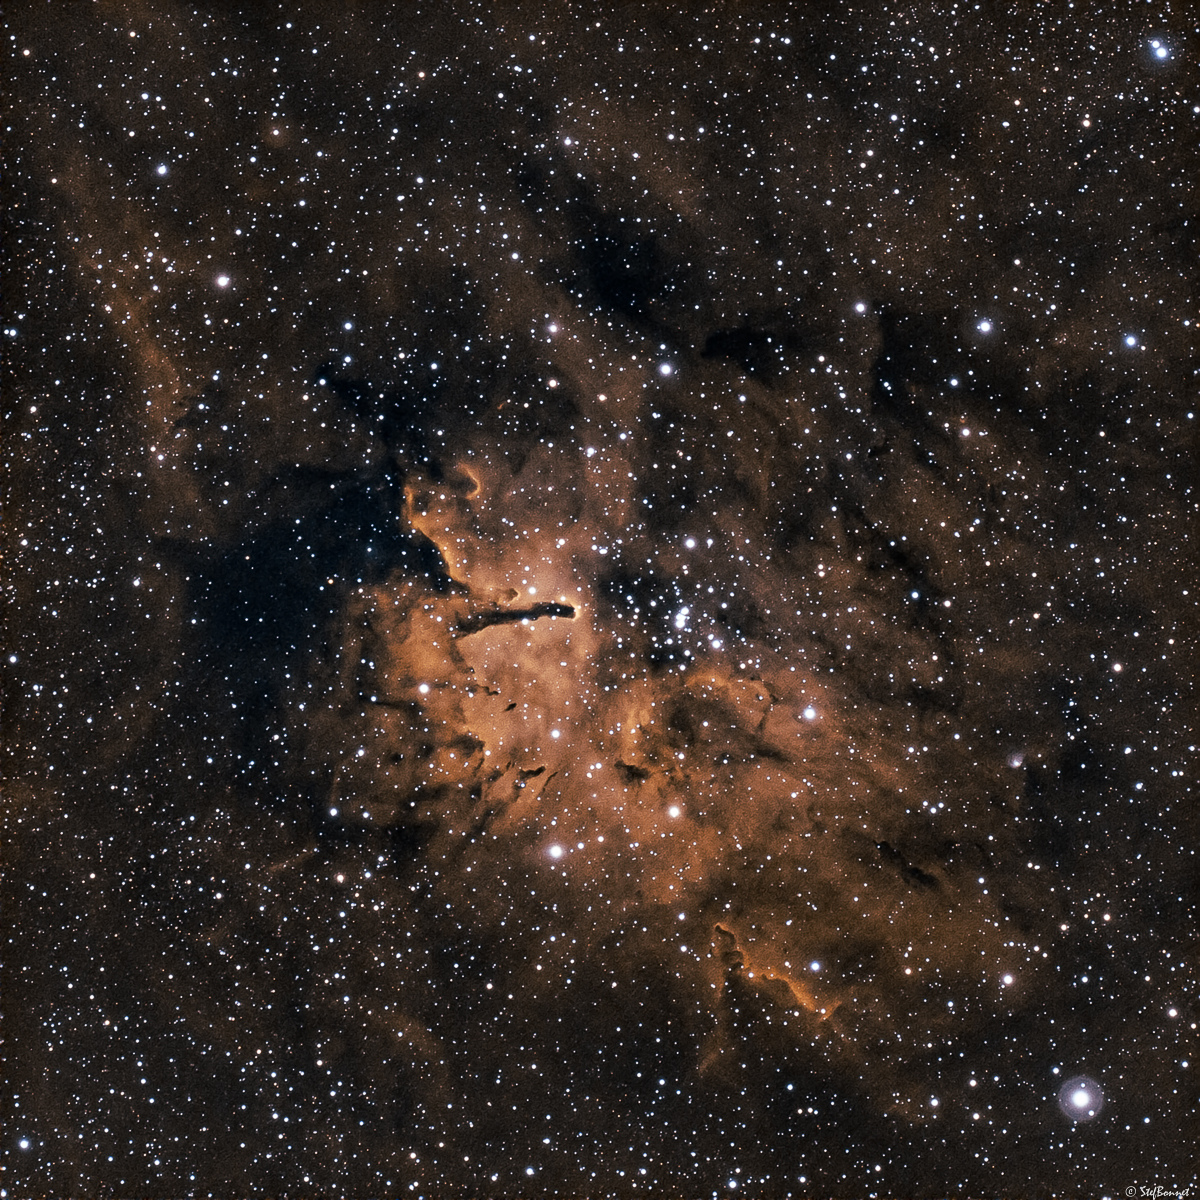 629e5704e8f41_NGC6820-Web.jpg.94502fab0e47303b0afb0e30be015fc5.jpg